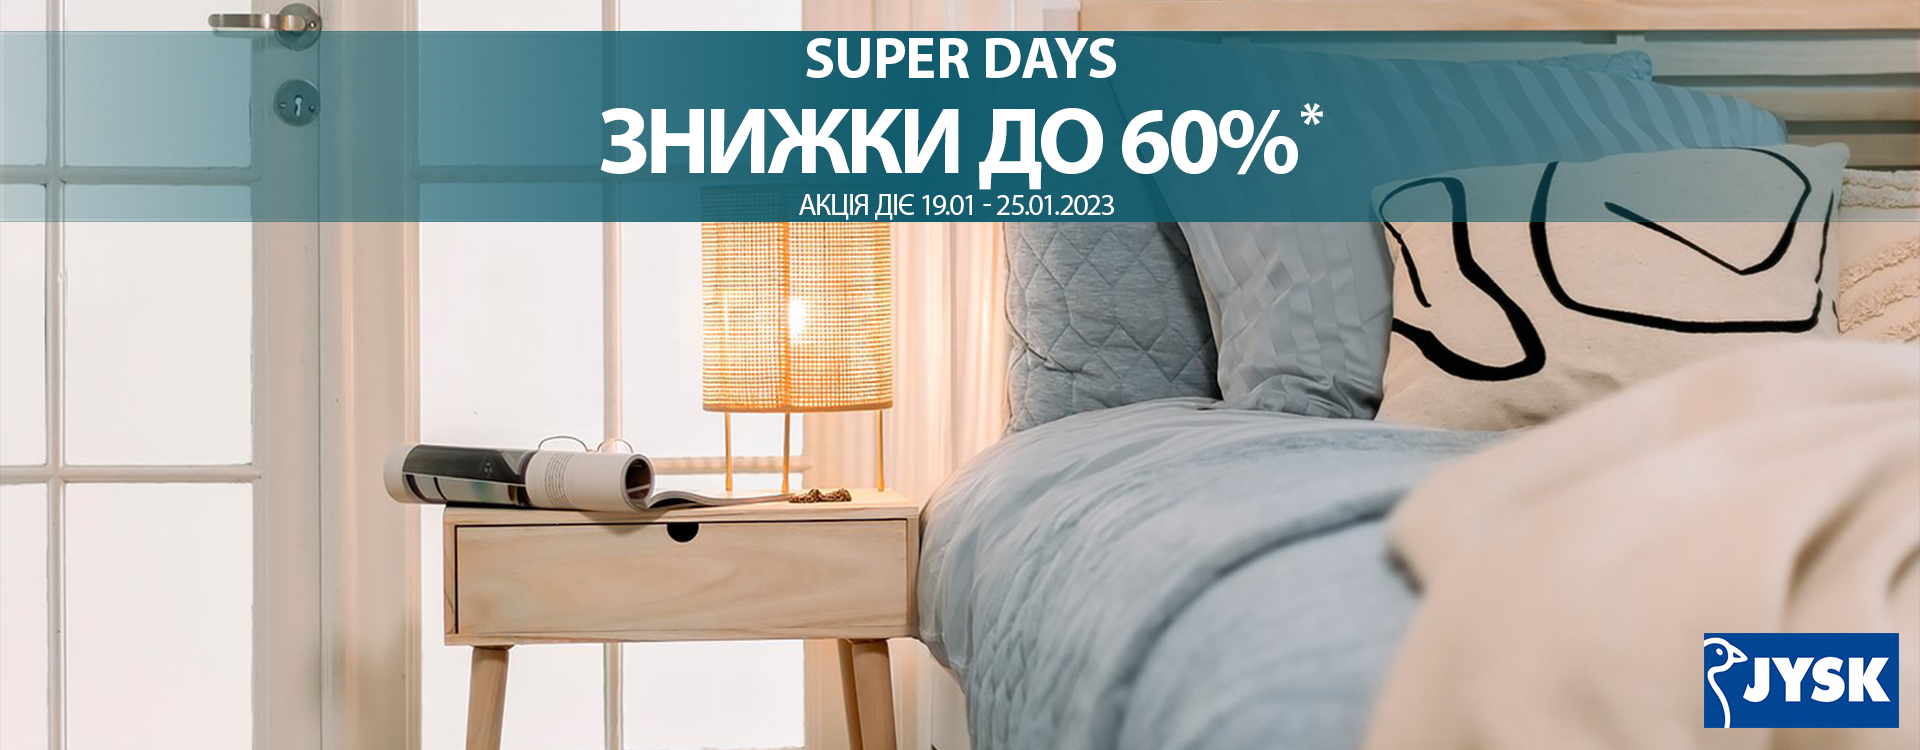 Super Days та суперзнижки до 60%